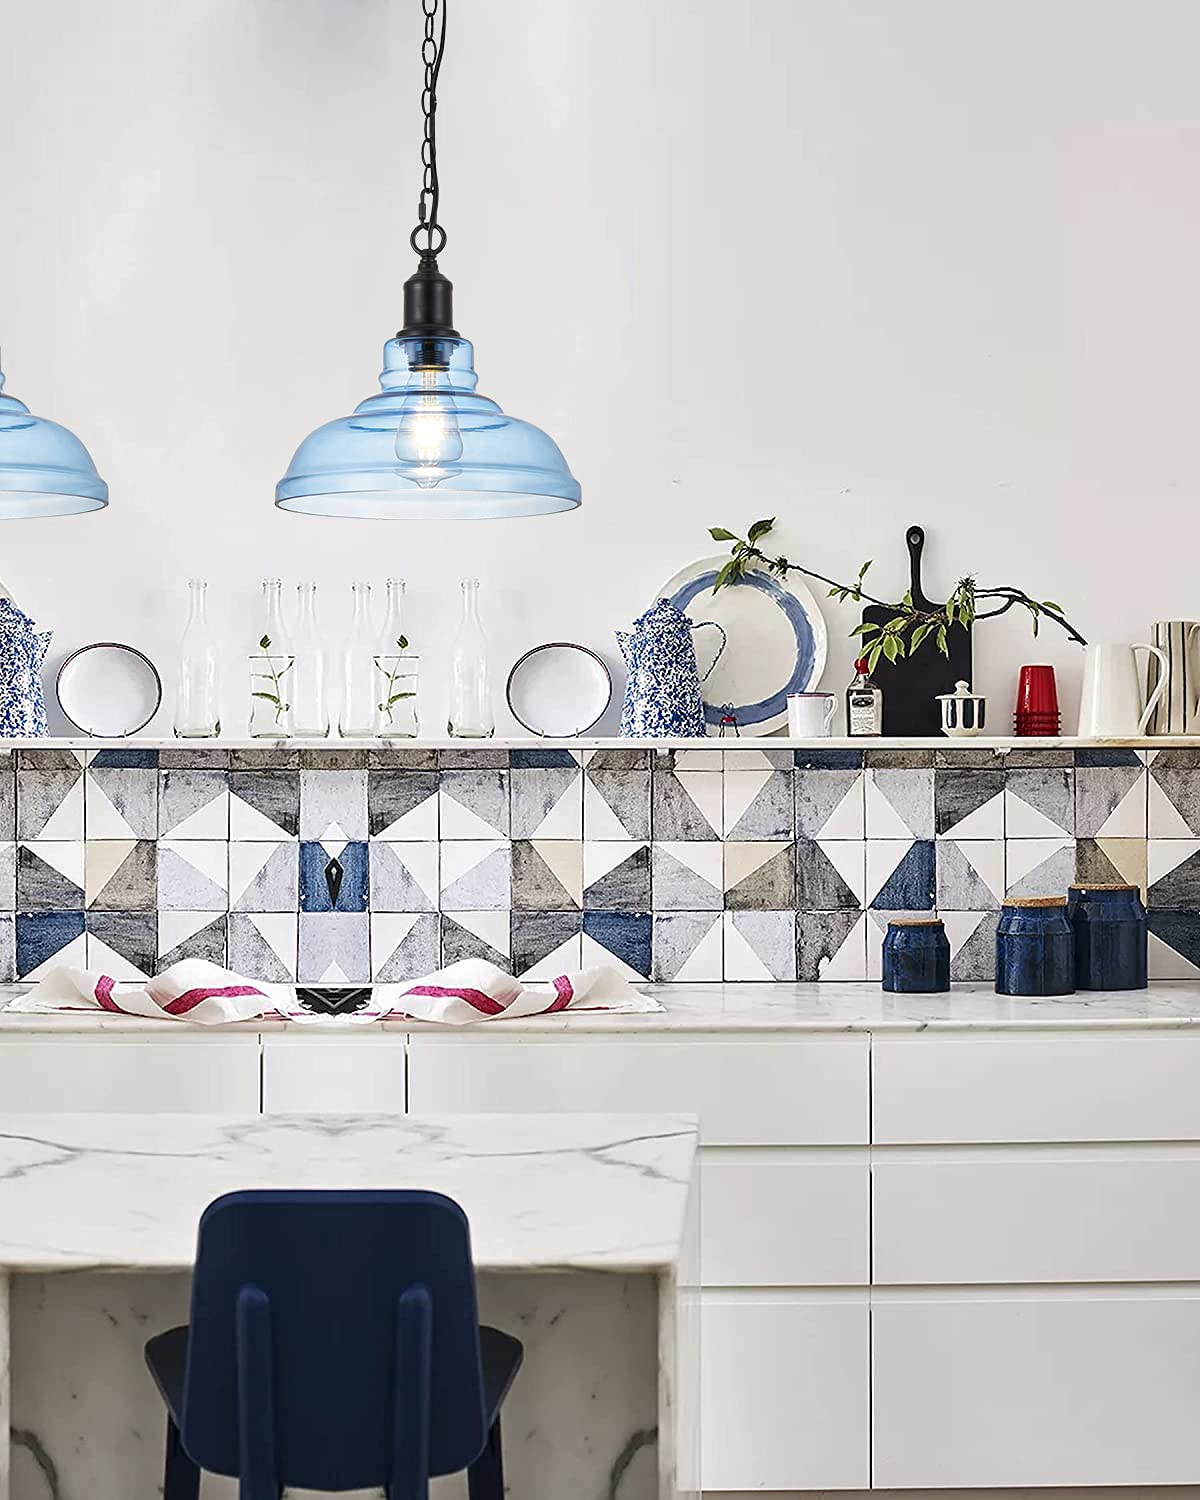 Modern kitchen sink light fixtures blue glass pendant light fixture with chain